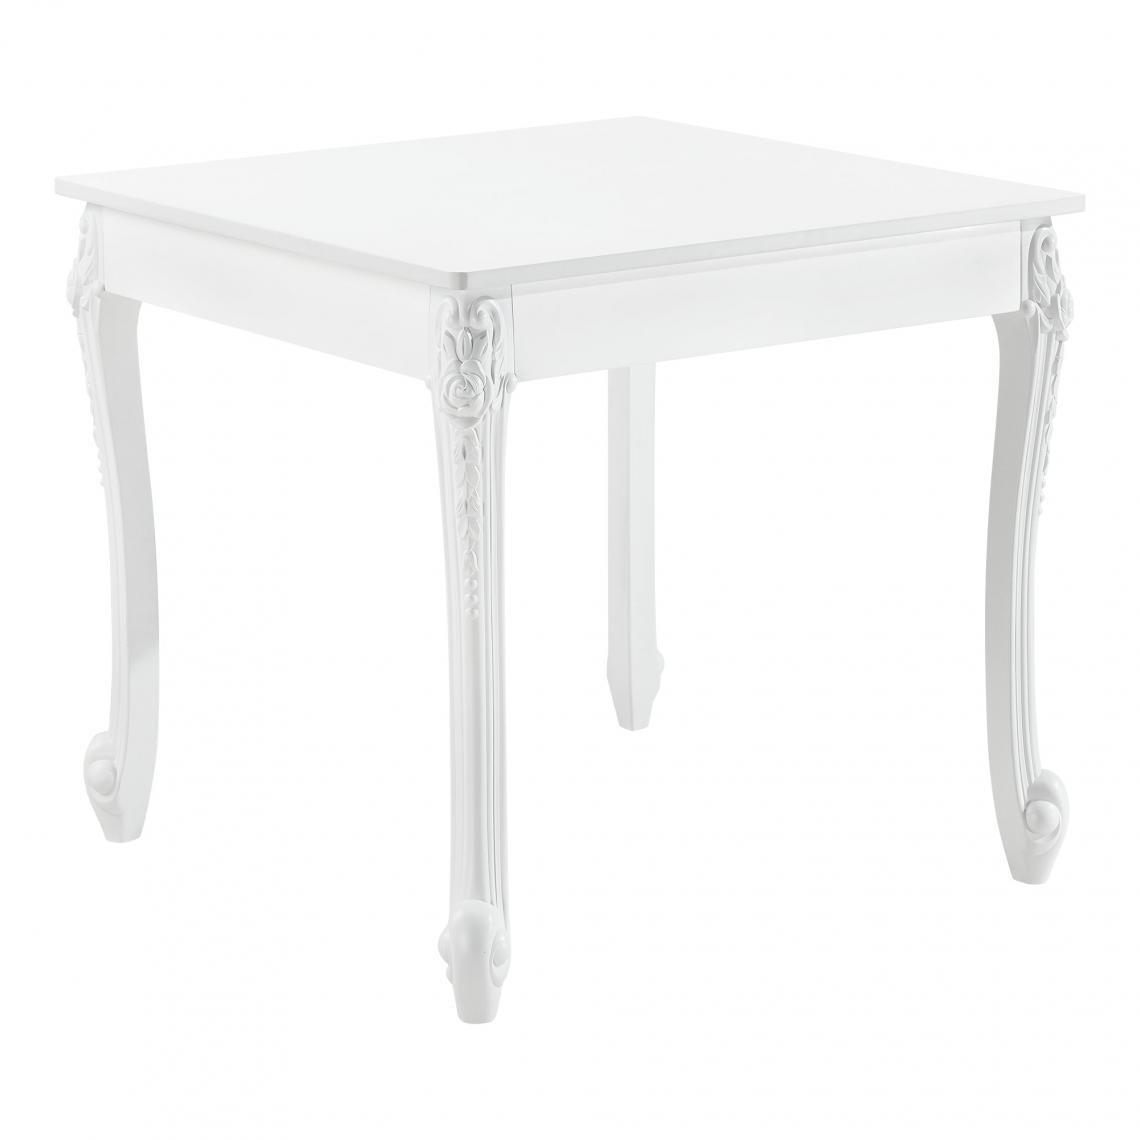 Helloshop26 - Table de salle à manger carrée design élégant pour 2 personnes MDF plastique 80 x 80 x 76 cm blanc 03_0006260 - Tables à manger